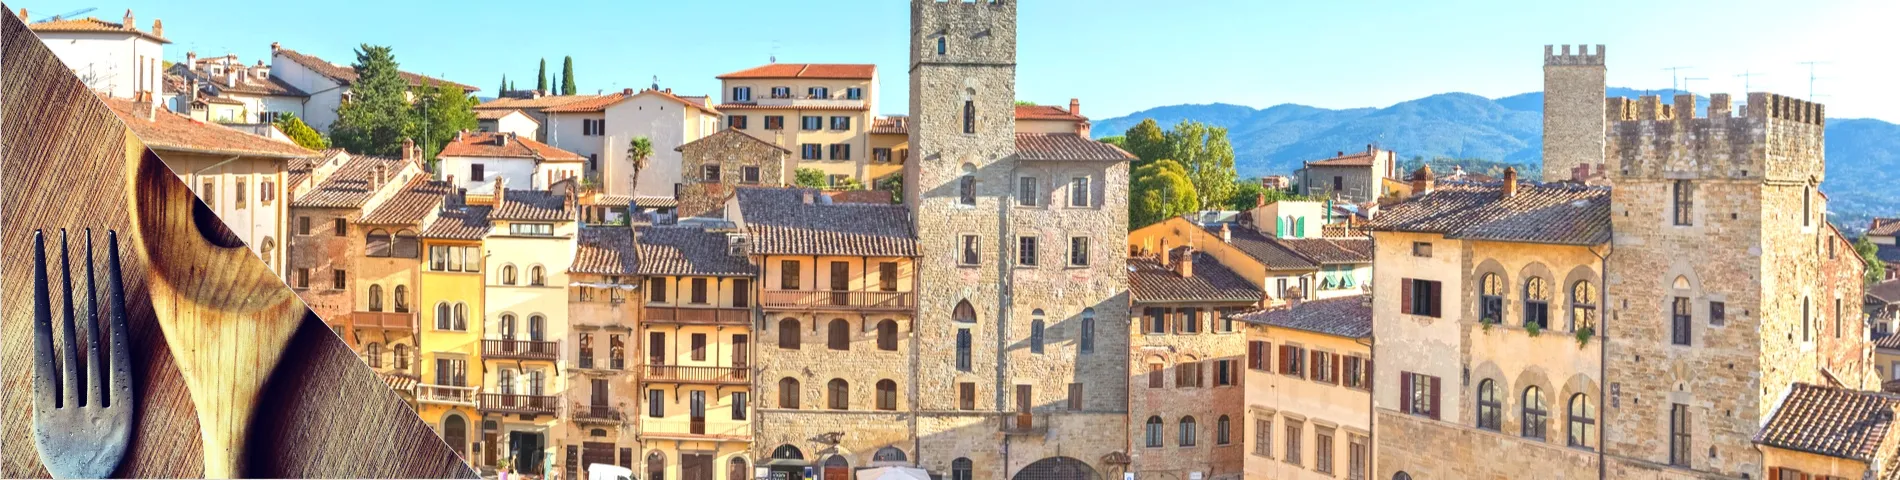 Arezzo - Italia & ruoanlaitto